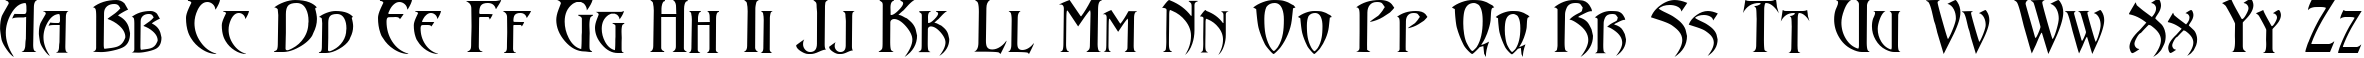 Пример написания английского алфавита шрифтом Arthur Gothic